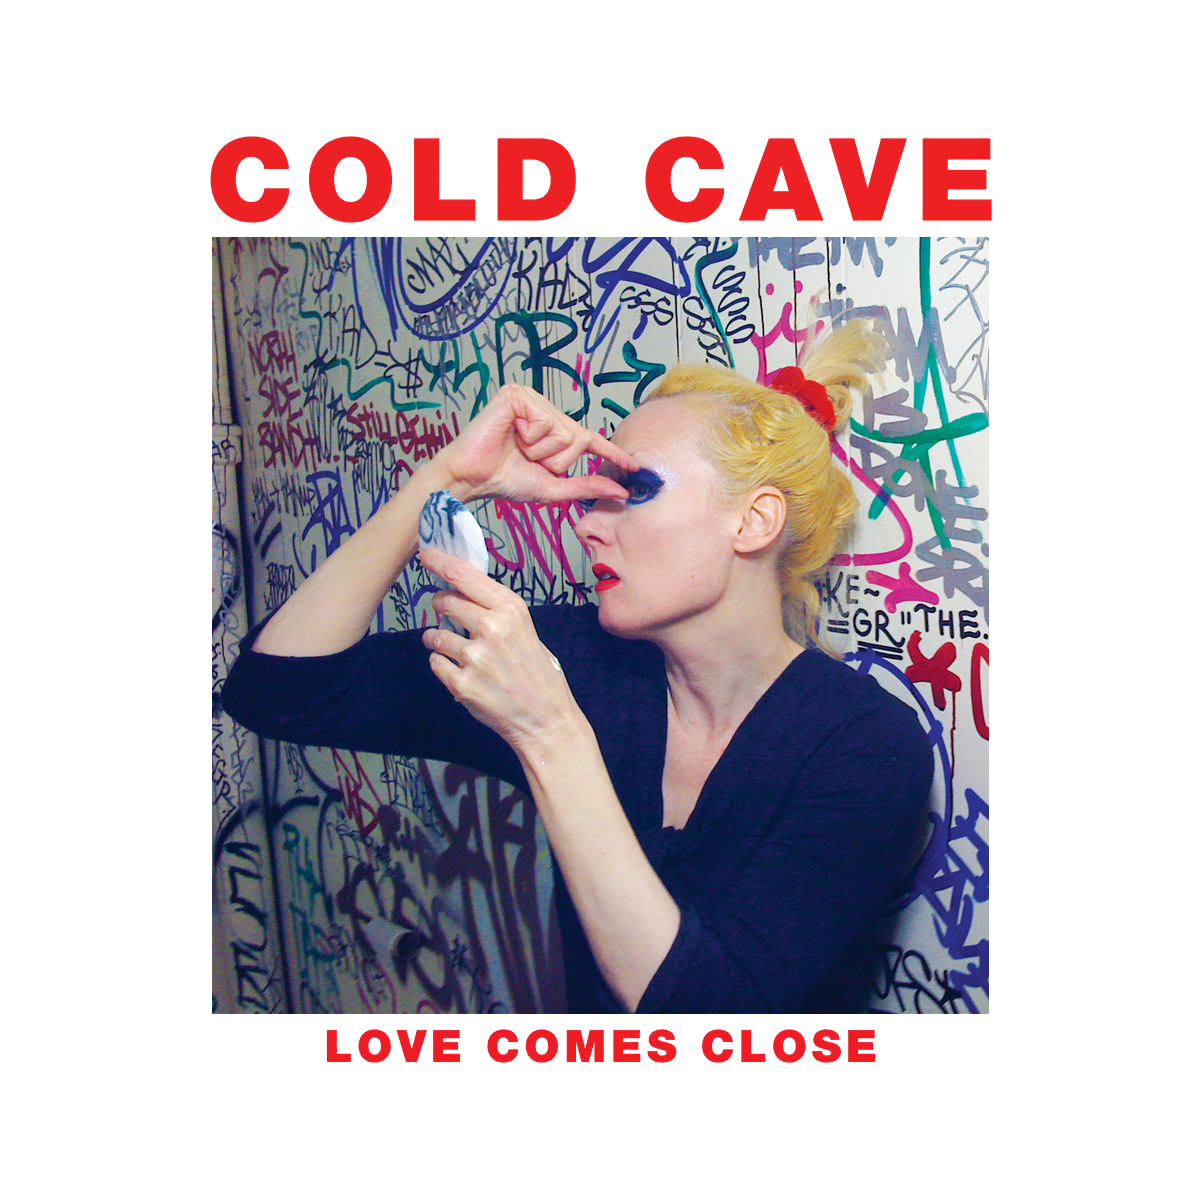 COLD CAVE - LOVE COMES CLOSE Vinyl LP